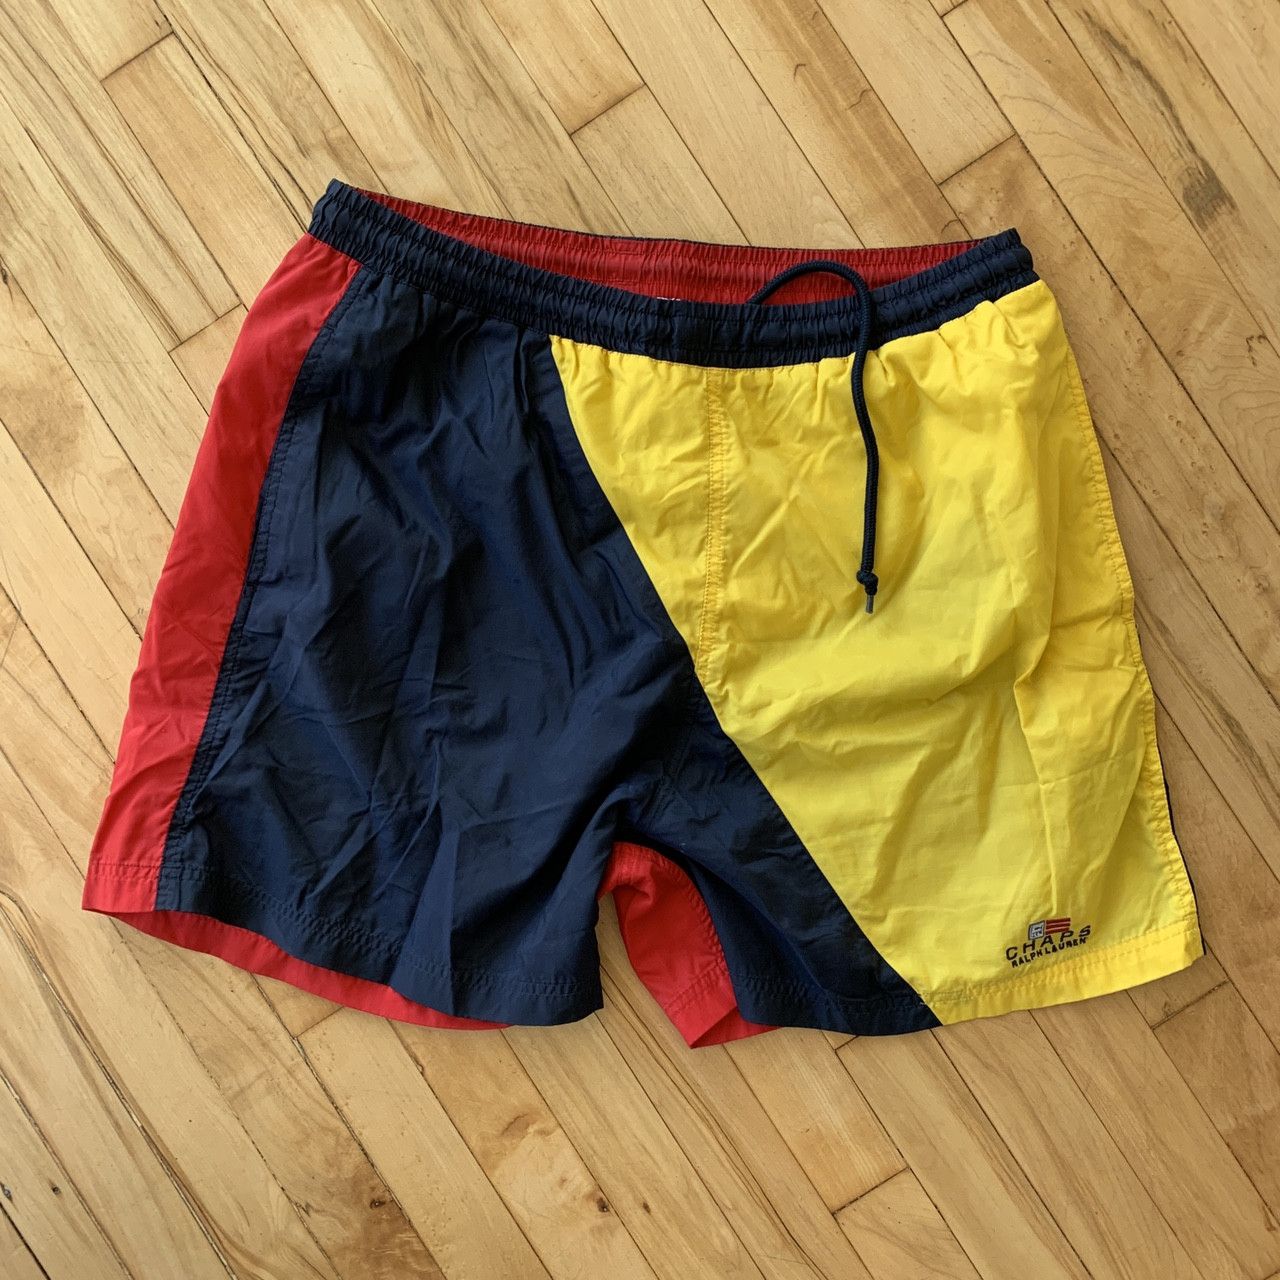 Chaps Ralph Lauren Polo Ralph Lauren Chaps shorts Size US 36 / EU 52 - 1 Preview